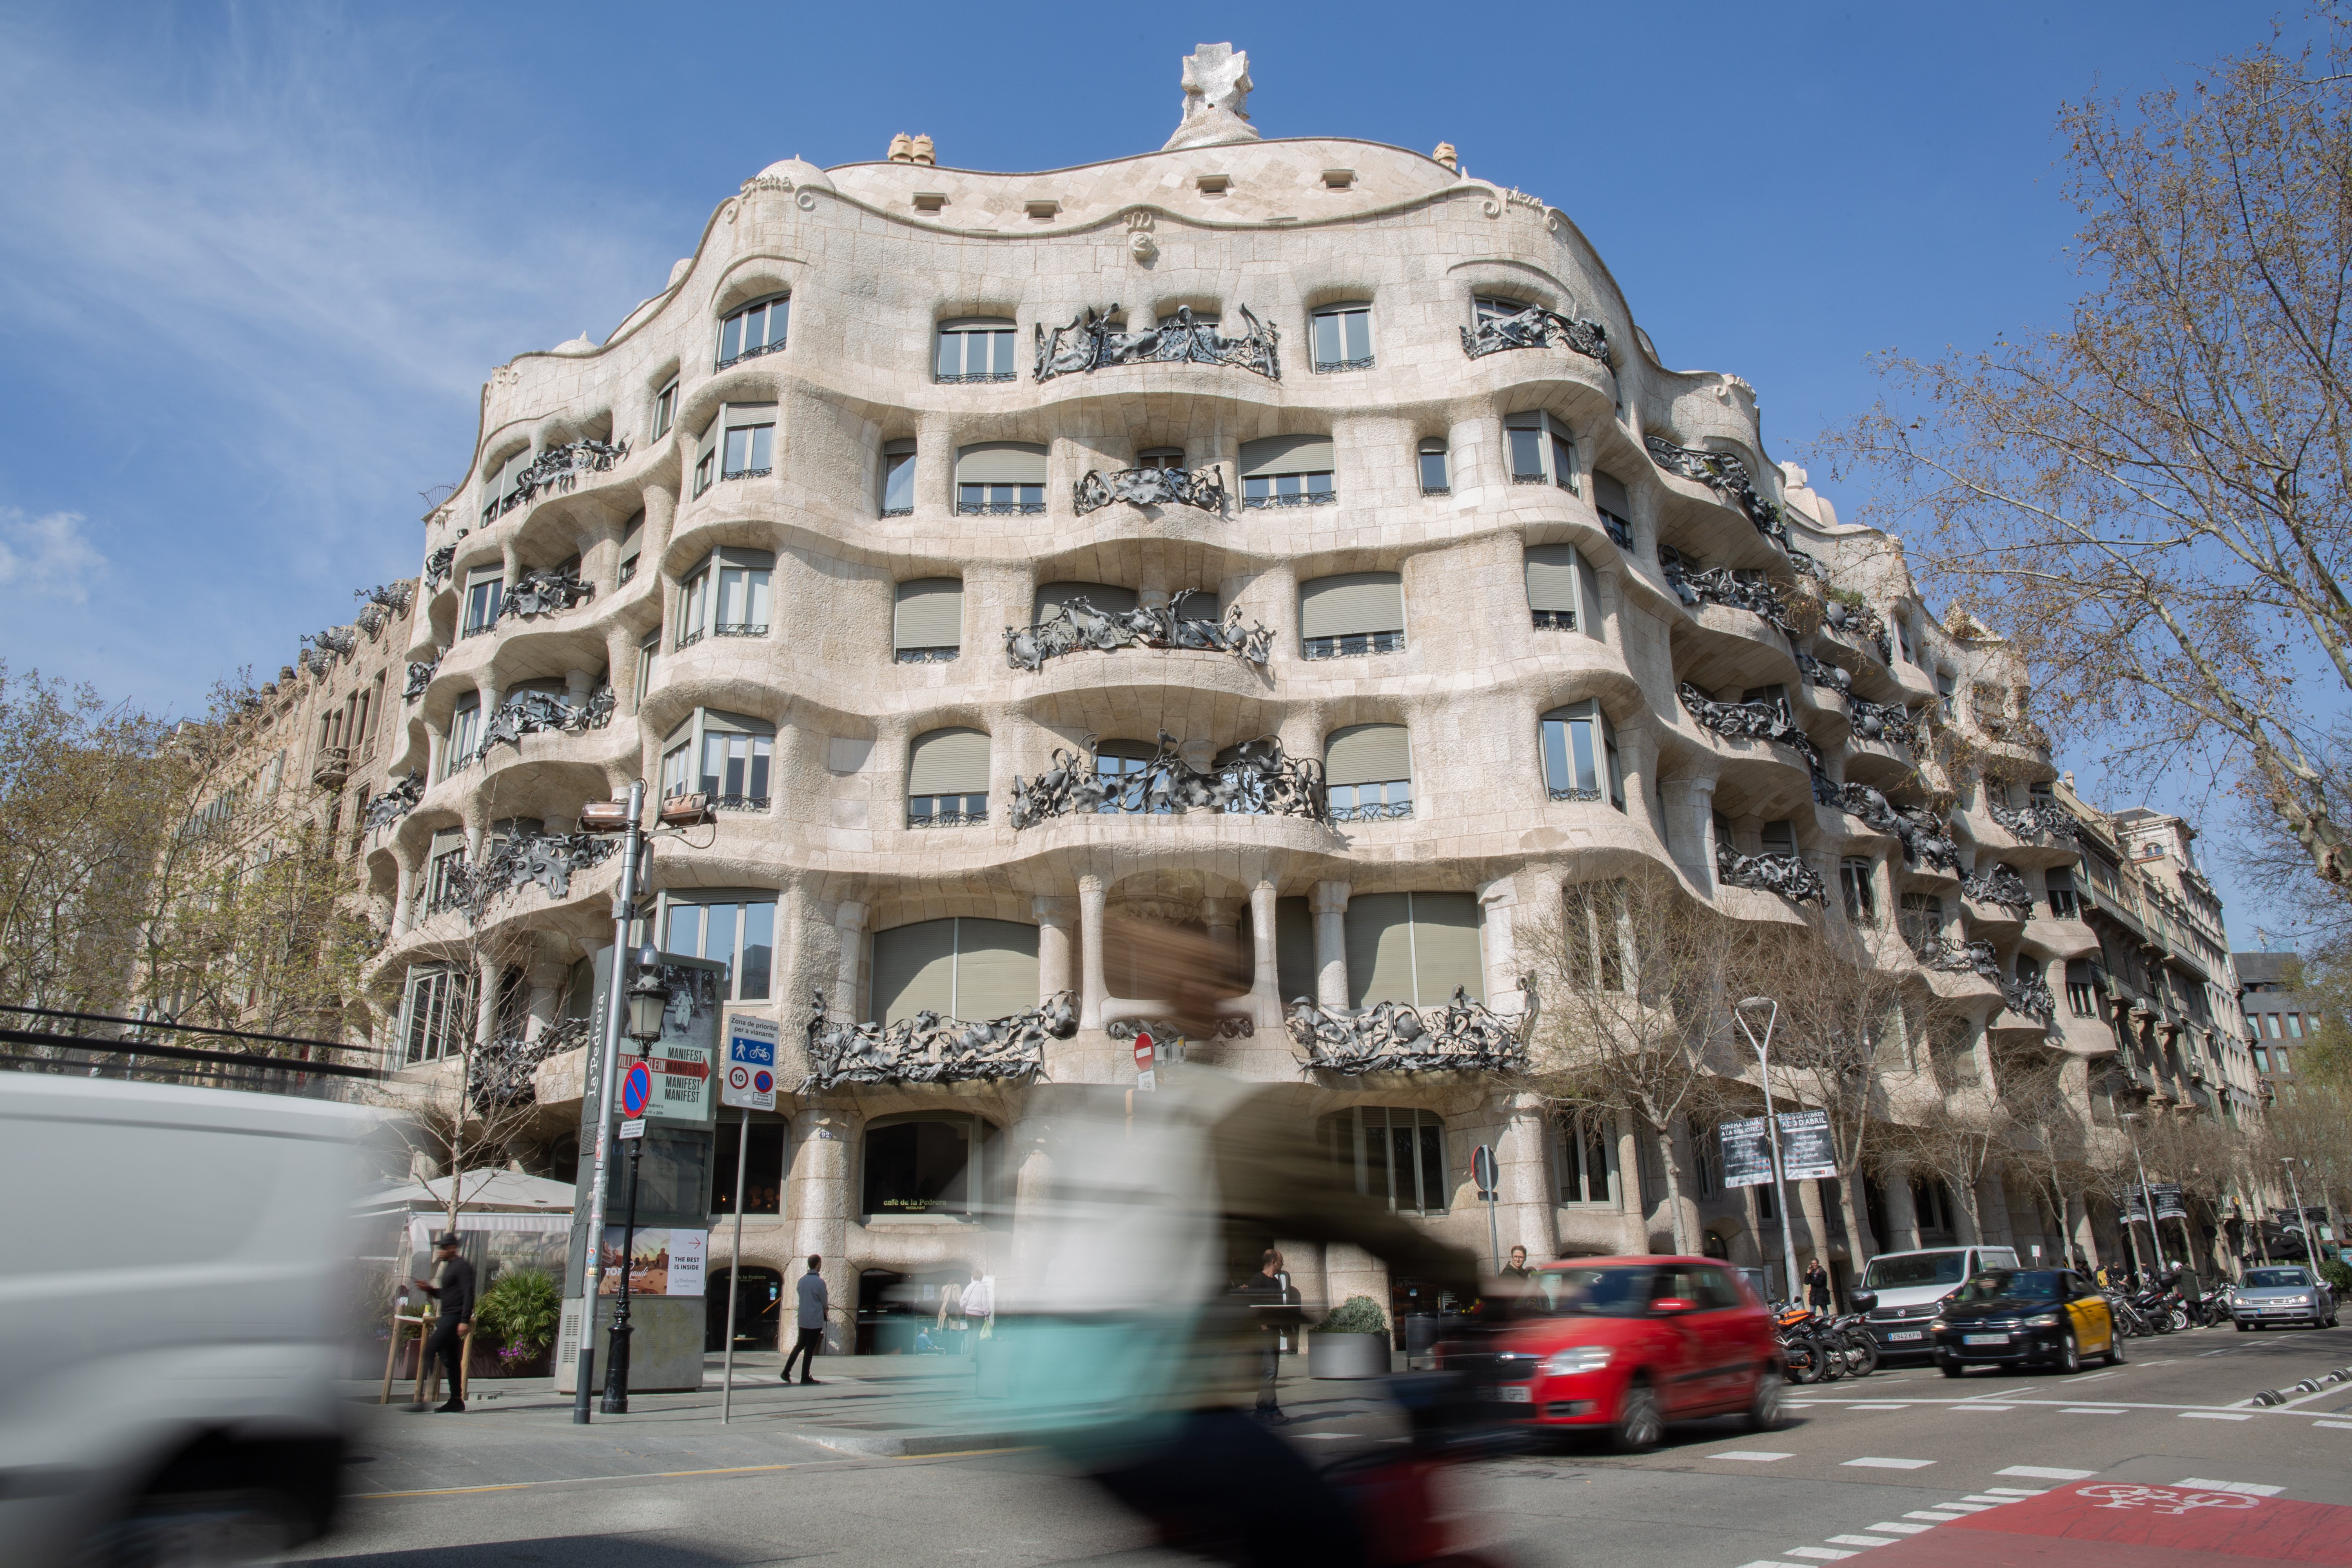 Posen en venda per 10.000 euros quatre portes que podrien ser de Gaudí